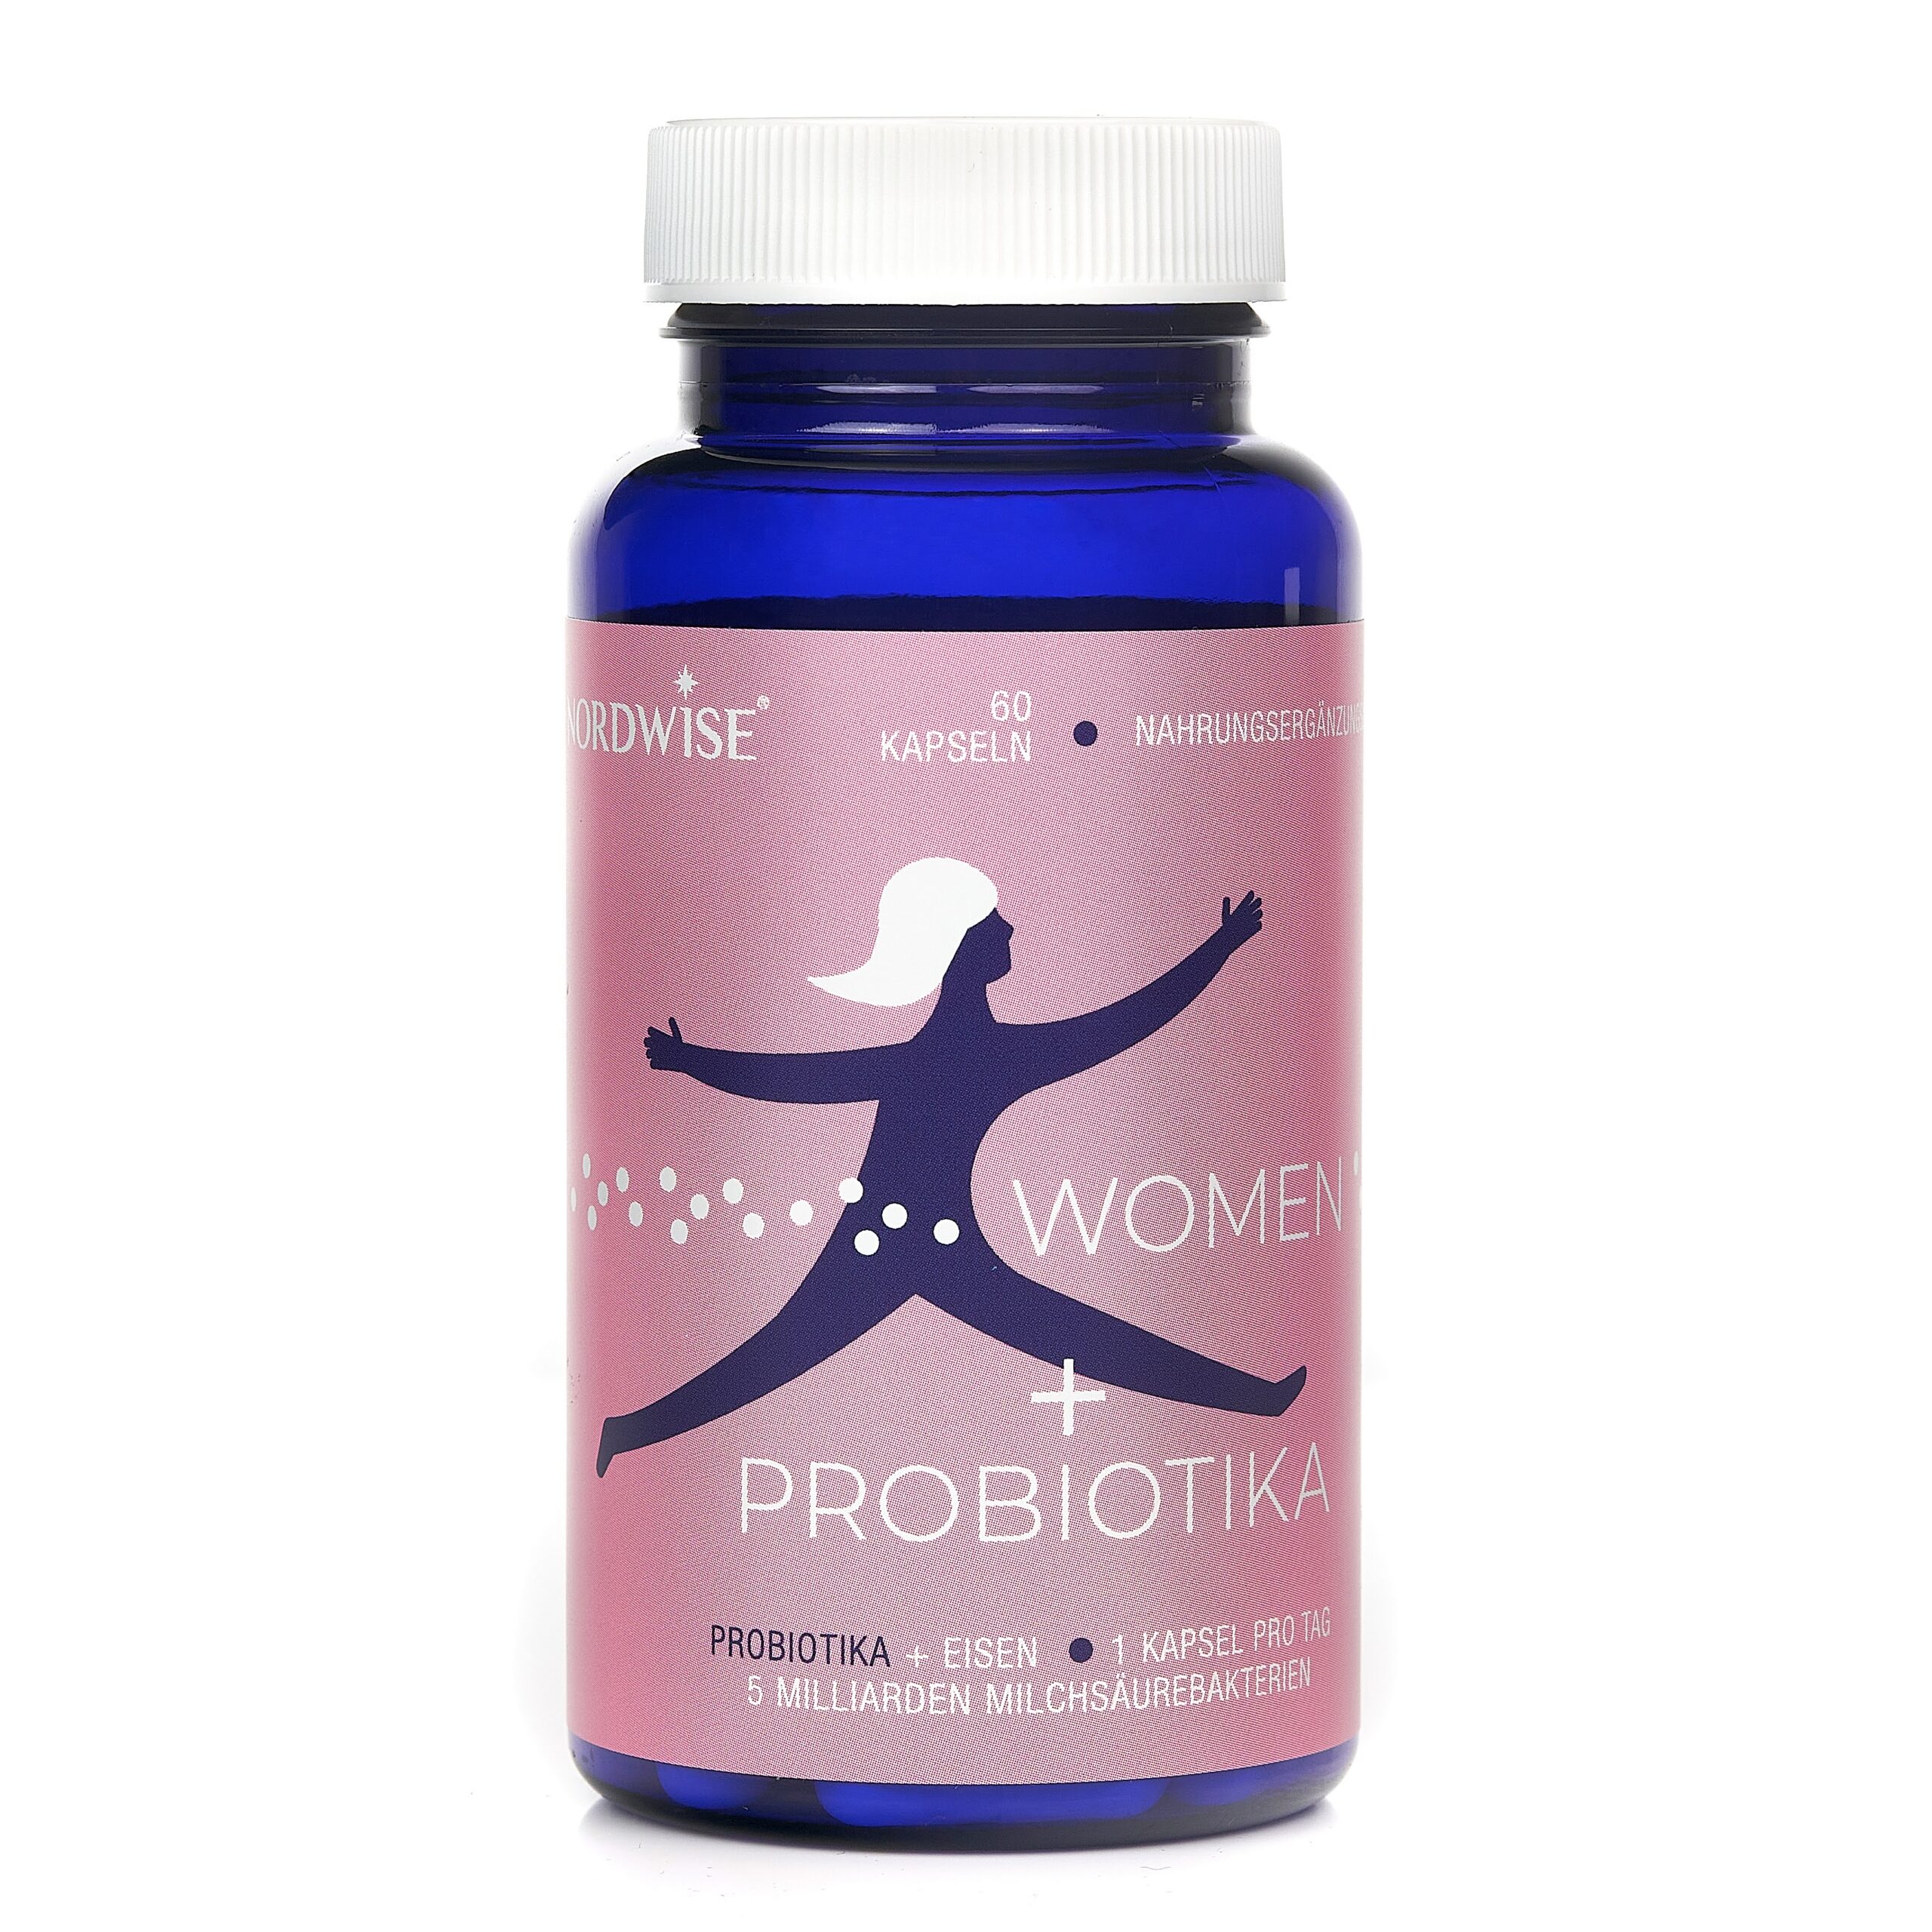 Nordwise® Women probiotics